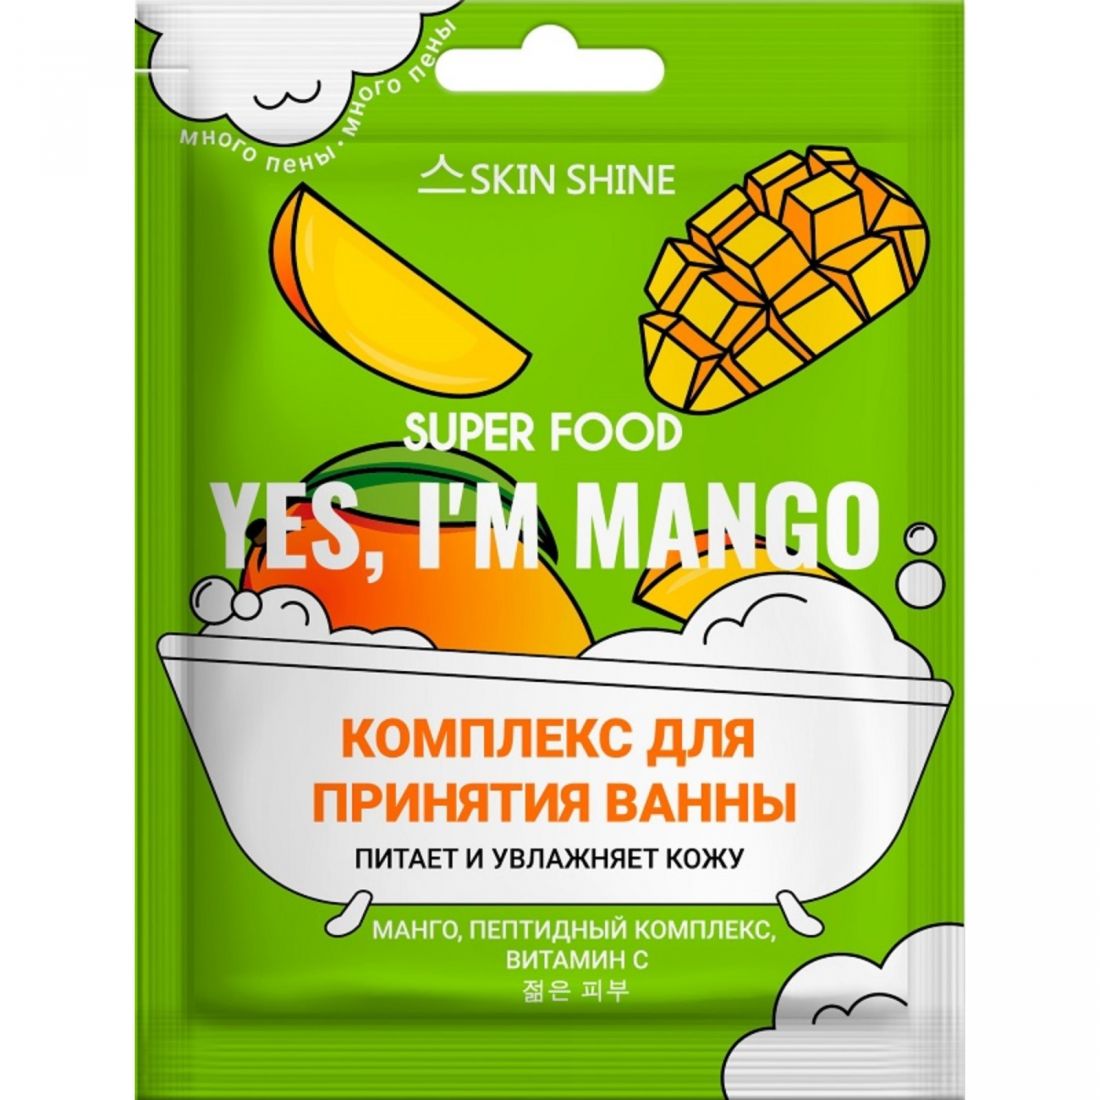 Комплекс SKIN SHINE SUPER FOOD "YES, I'M MANGO" для принятия ванны МАНГО 75 мл (12137)